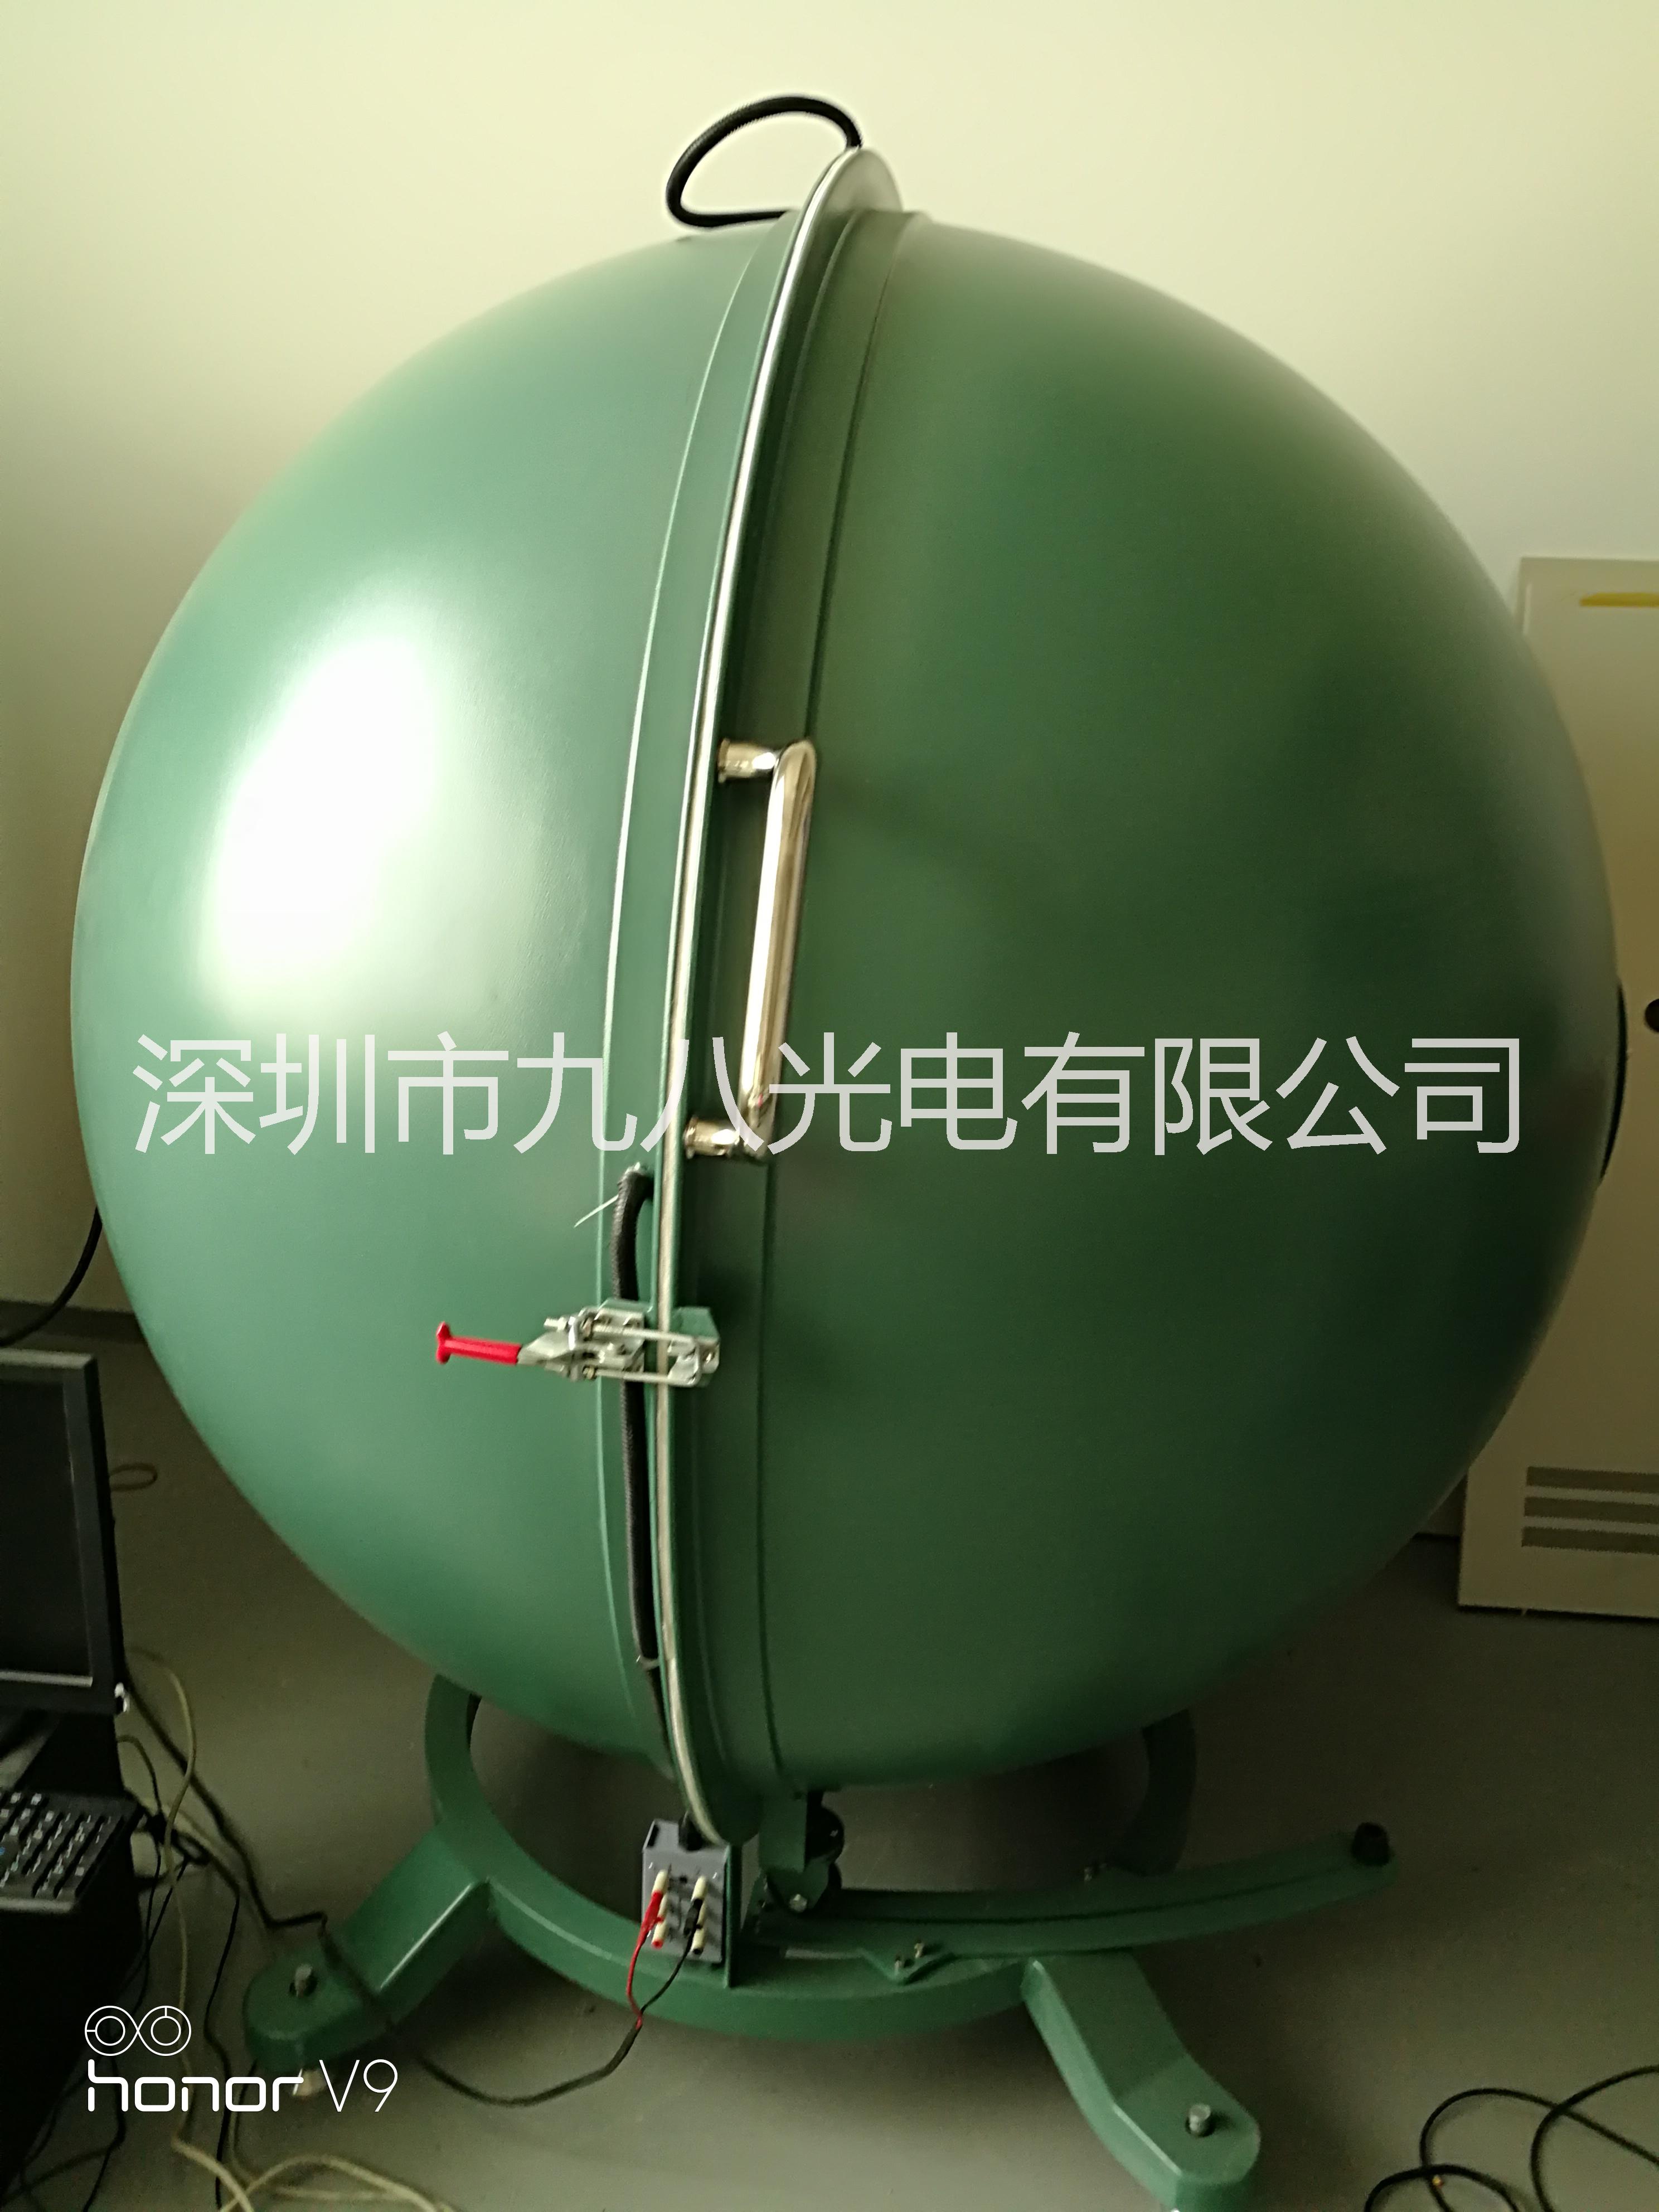 LED封装测试专用积分球转让杭州远方光电HAAS-2000专用积分球 LED封装测试专用积分球